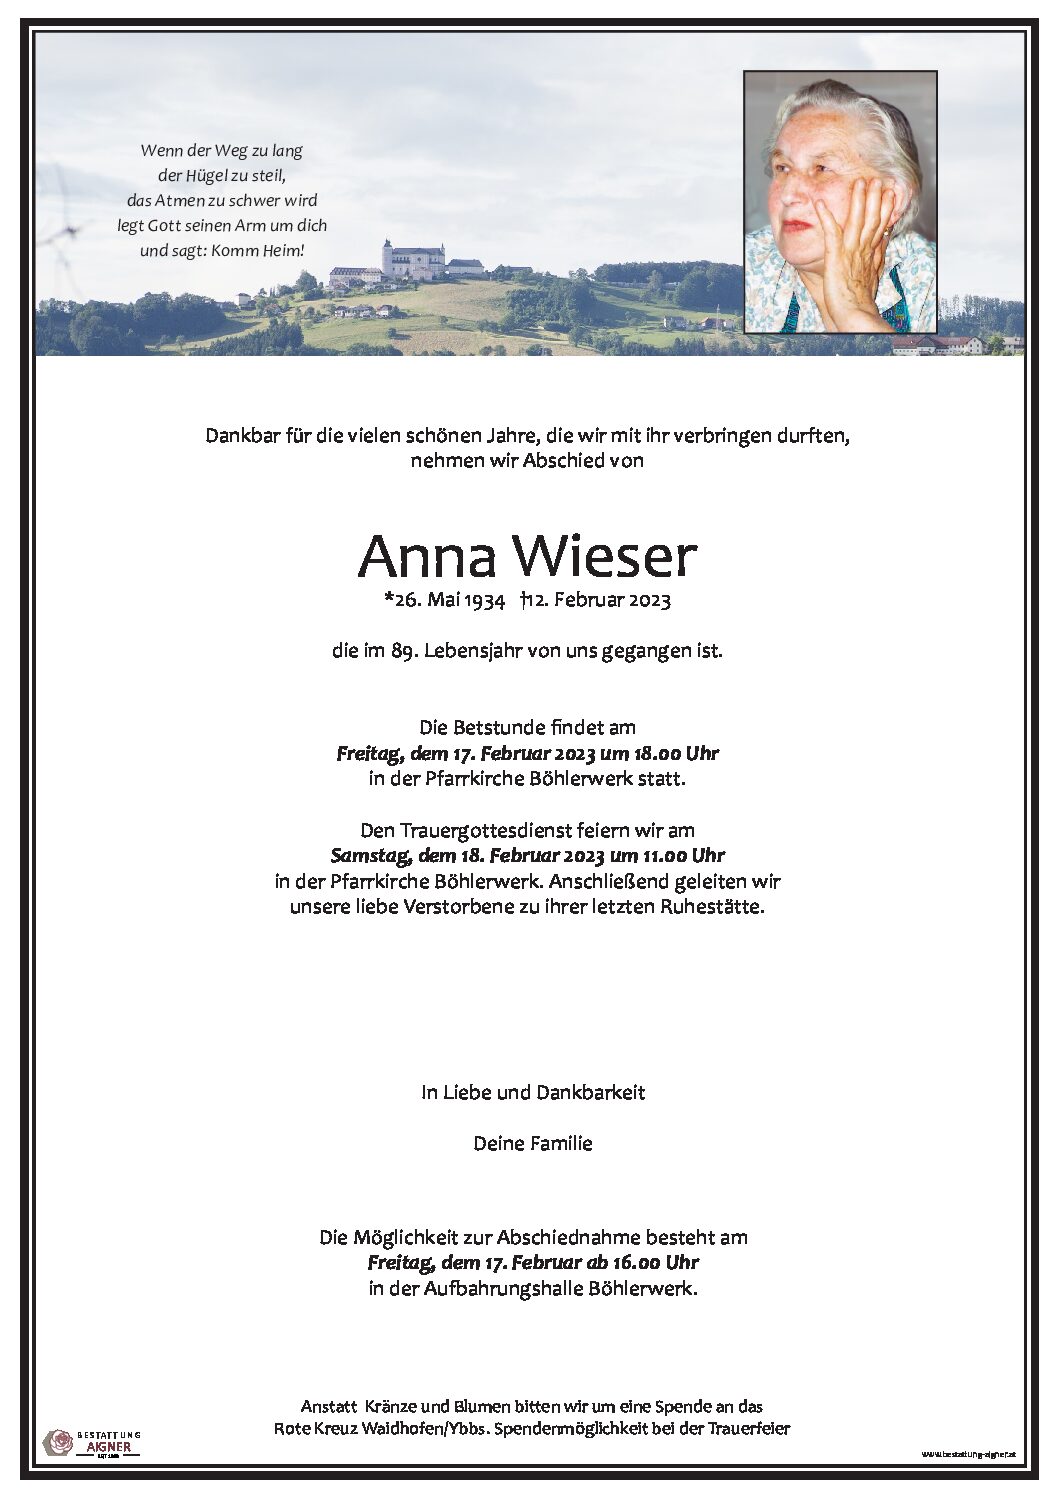 Anna Wieser